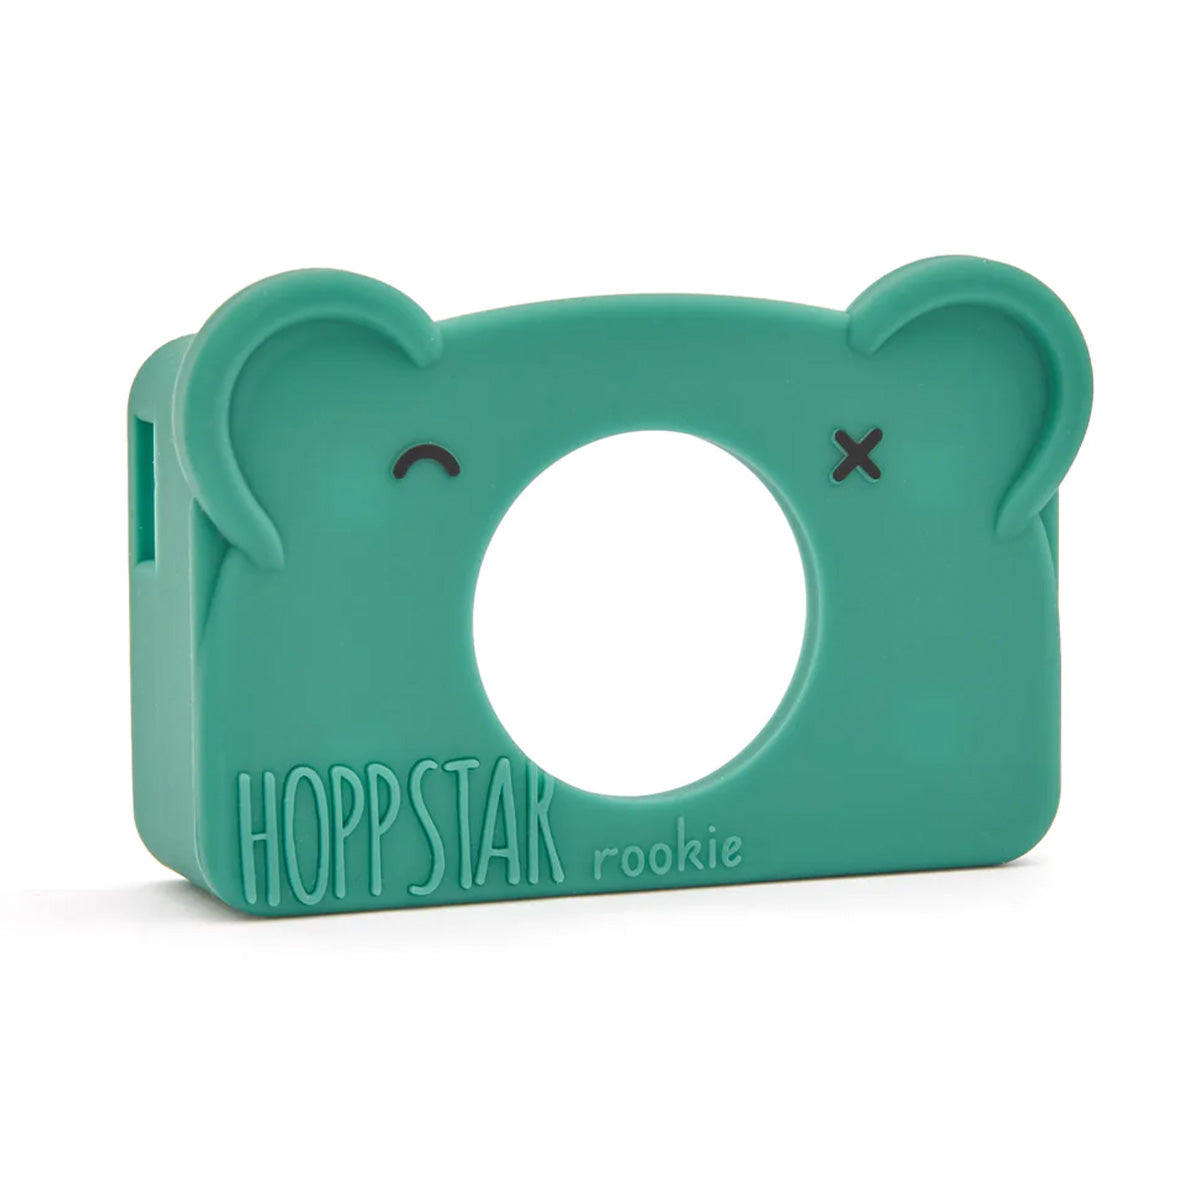 De Hoppstar siliconen case Rookie moss is een beschermhoes voor de Hoppstar Rookie camera. Deze camera wordt geleverd met 1 hoesje, maar deze kun je verwisselen voor een andere variant. VanZus.